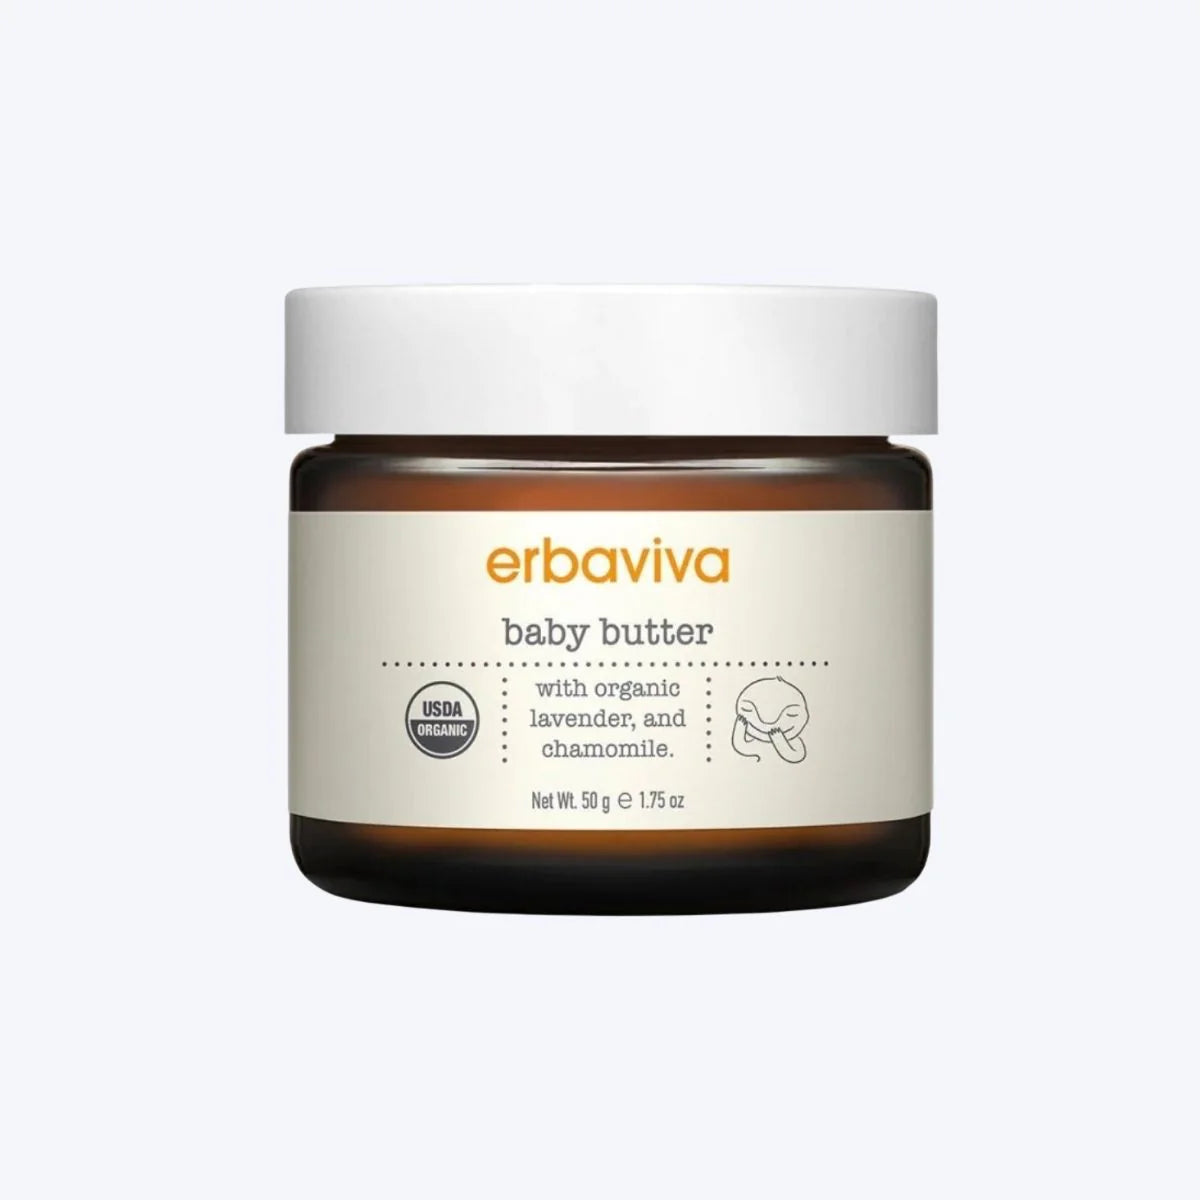 Baby butter skin cream for sensitive baby skin by Erbaviva